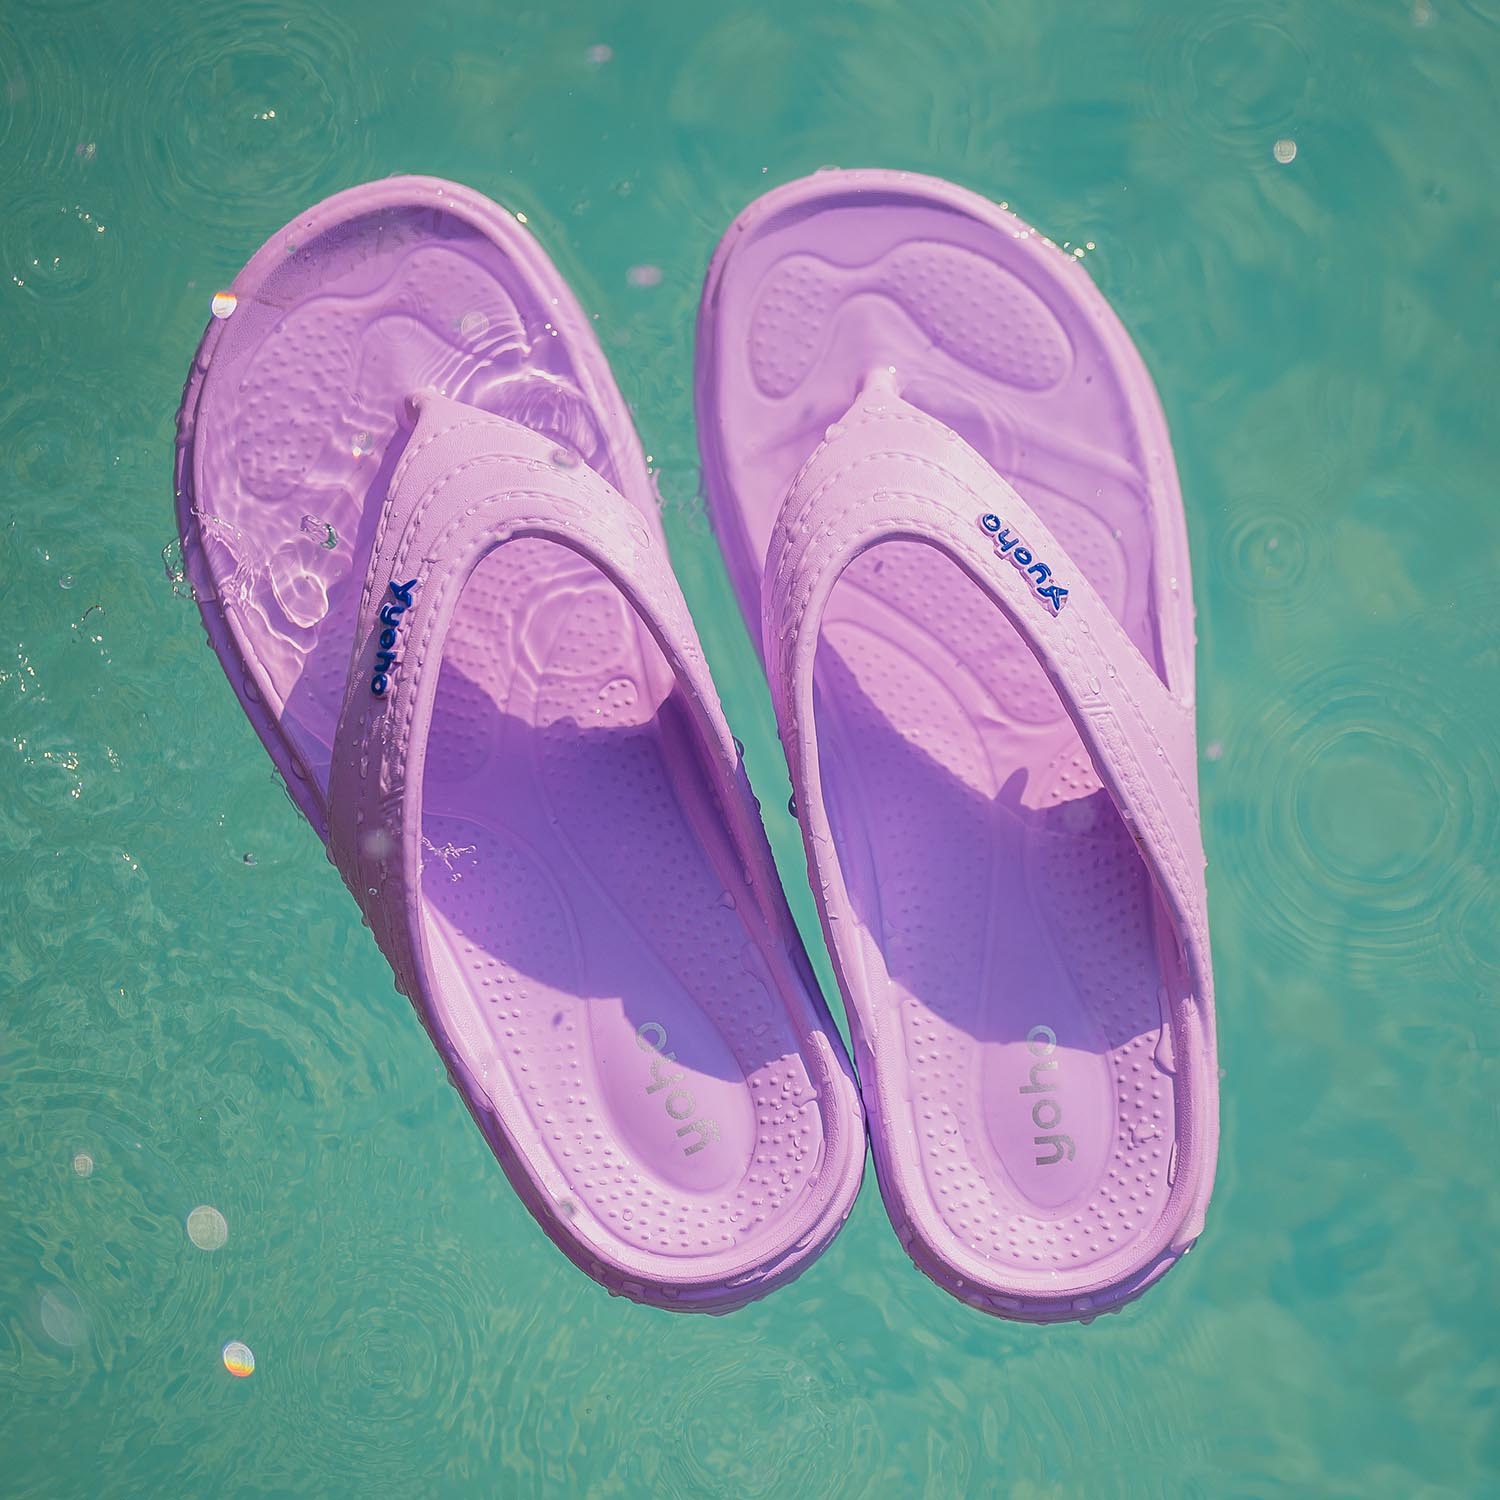 Waterproof Slippers | Waterproof Bathroom Slippers | Women Waterproof ...